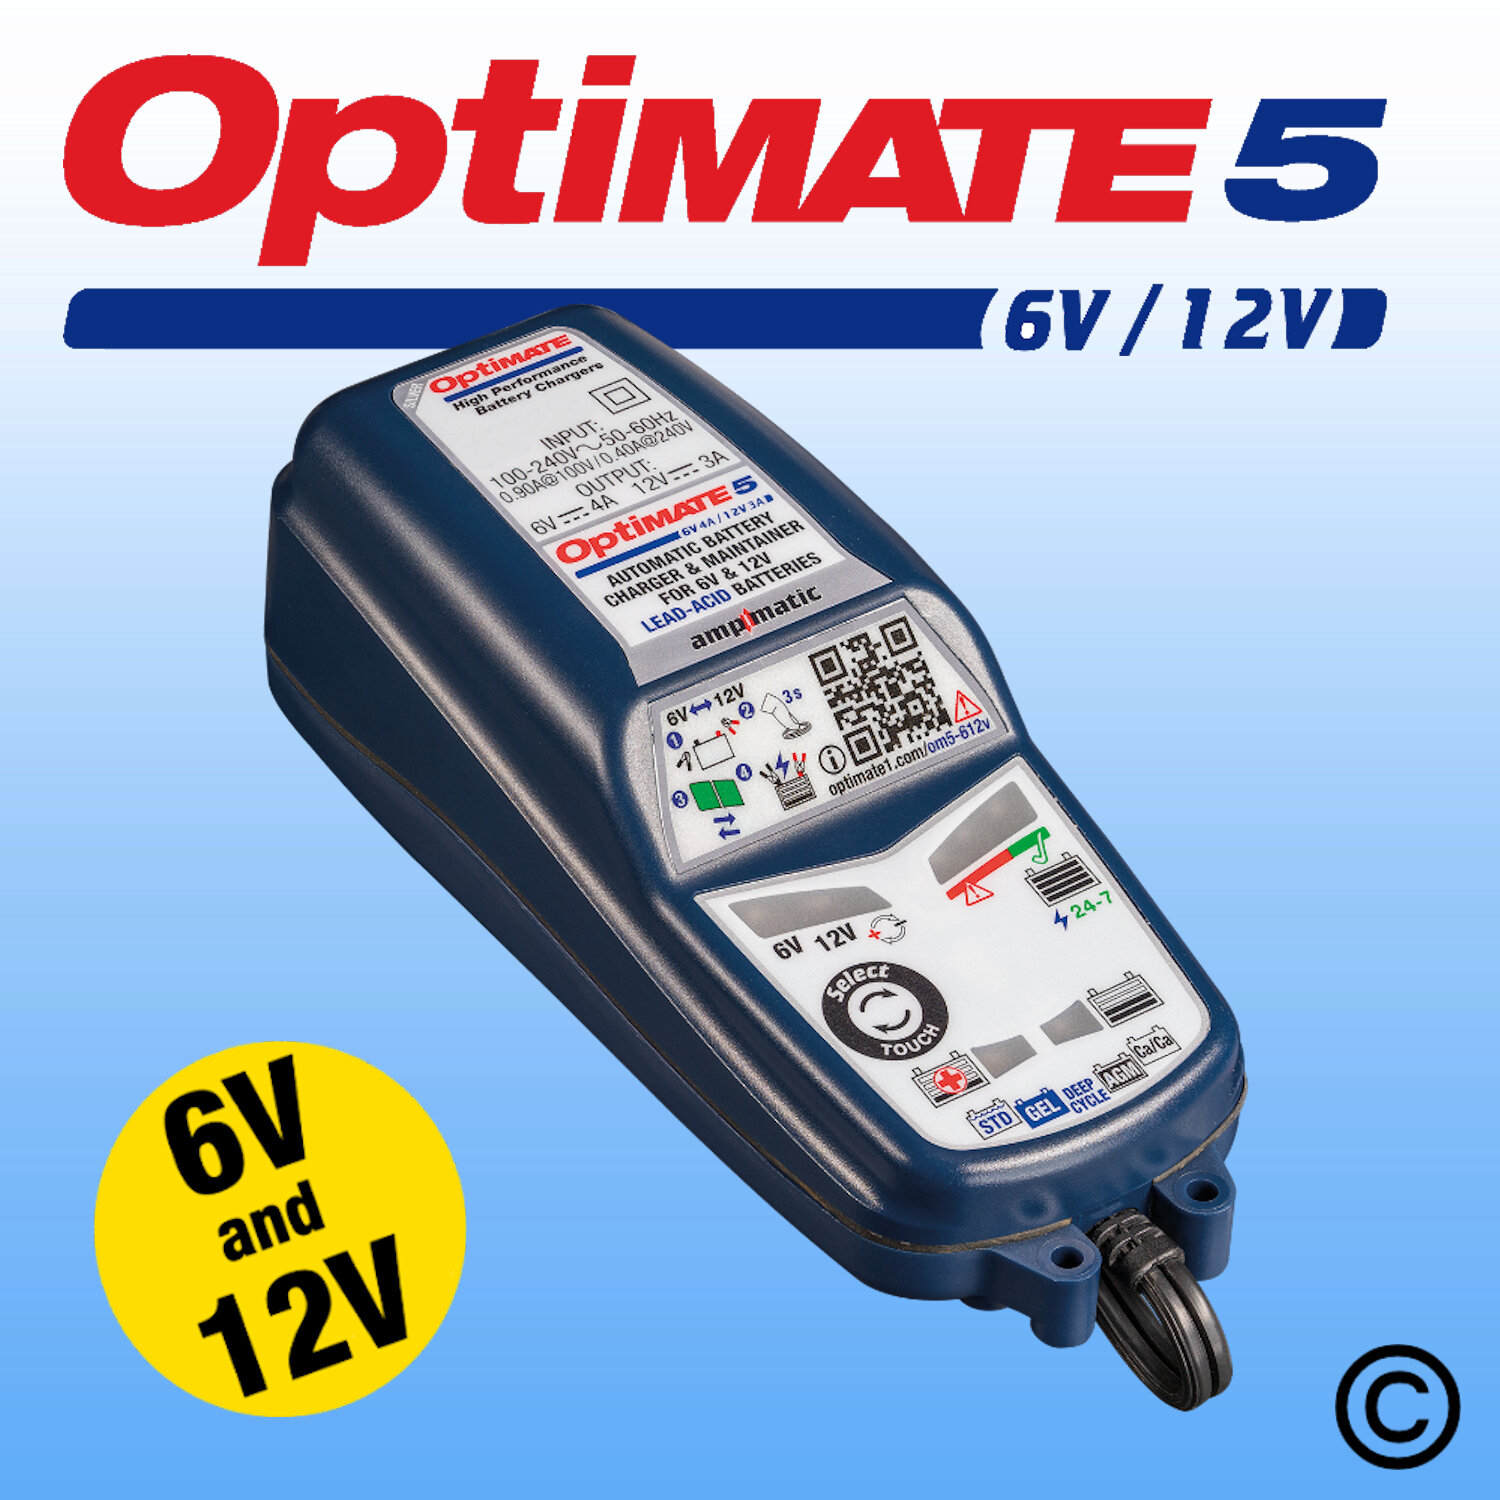 fange makker Udsigt OptiMate 5 6V/12V — OptiMate UK